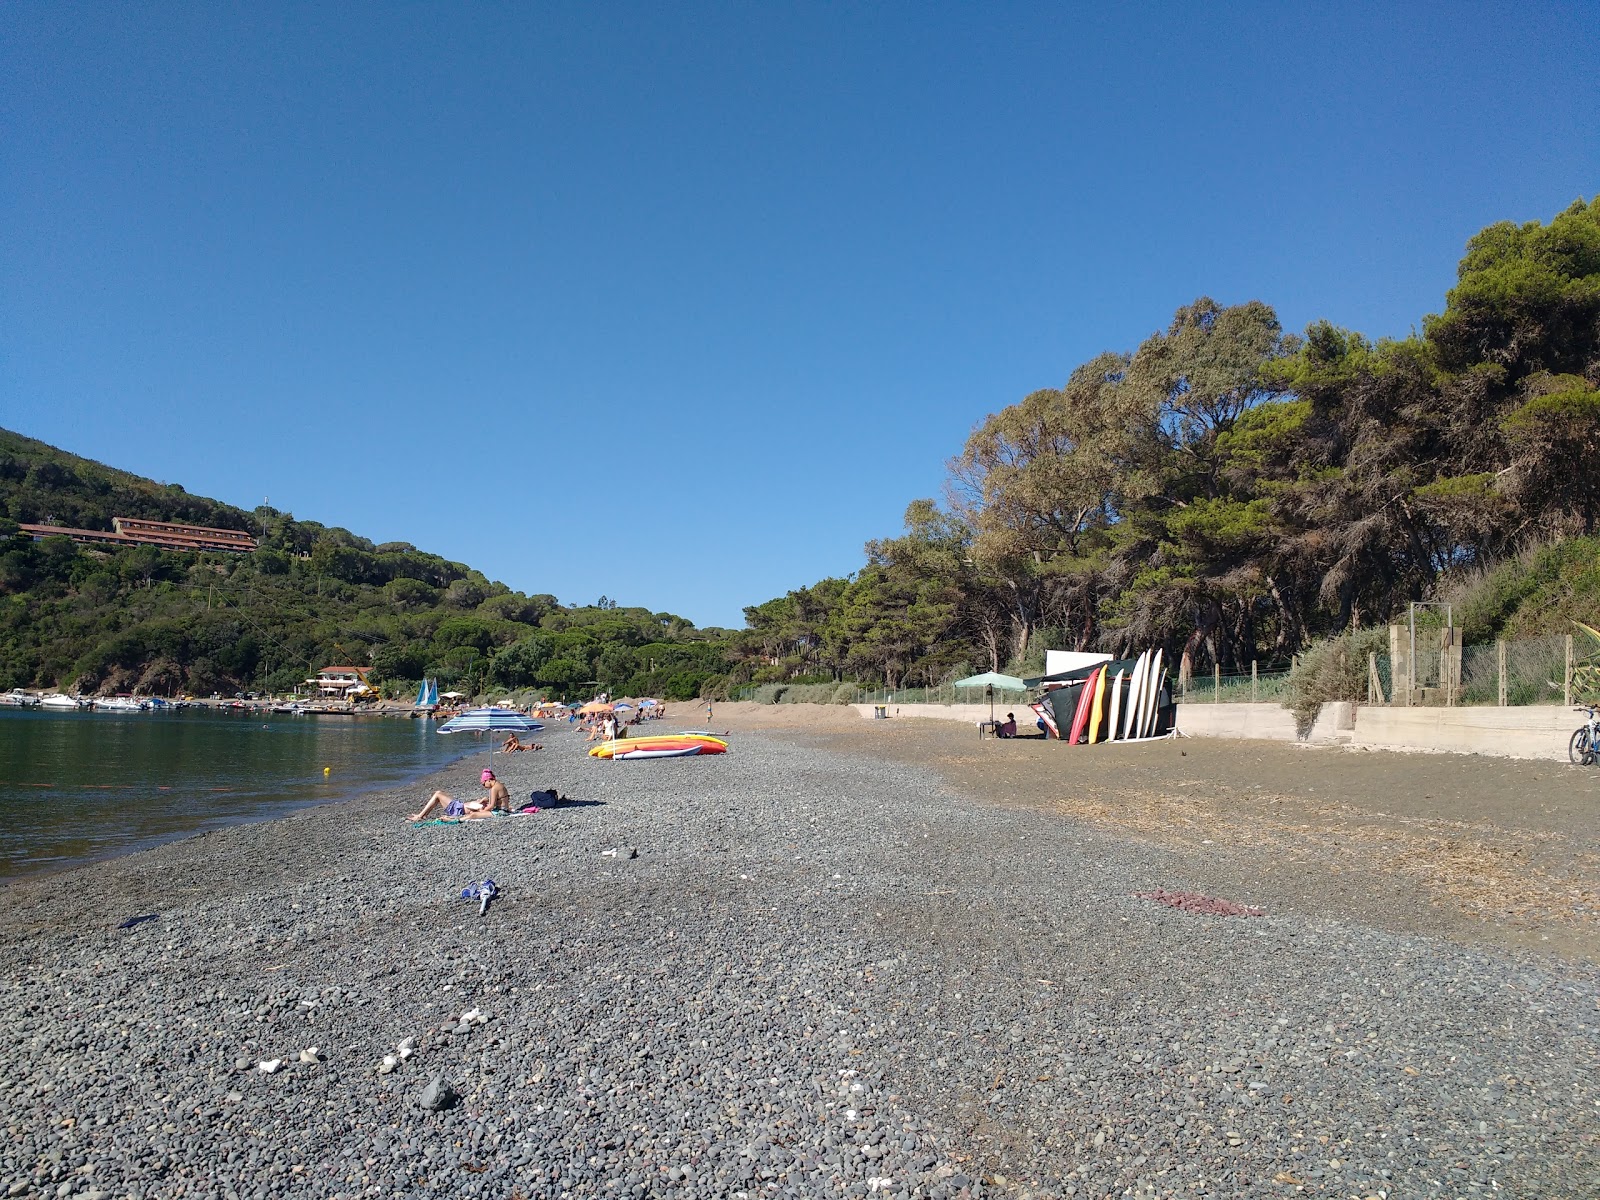 Margidore beach'in fotoğrafı gri çakıl taşı yüzey ile